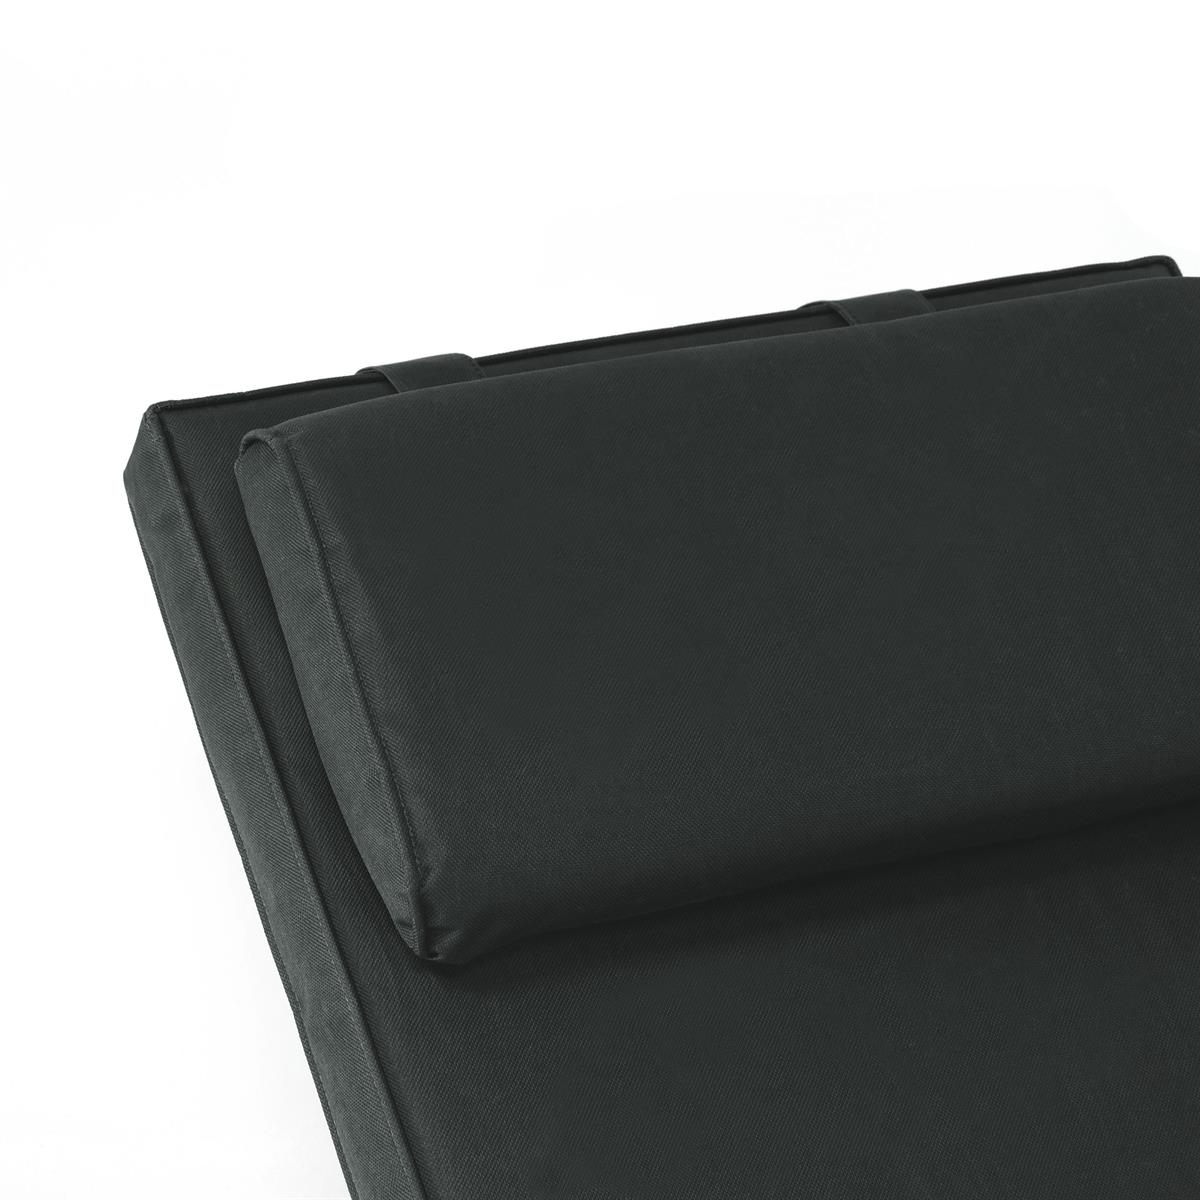 DIVERO 2x Liegenauflage Deckchair Steamer Liegestuhl-Auflage Polster hellgrün 